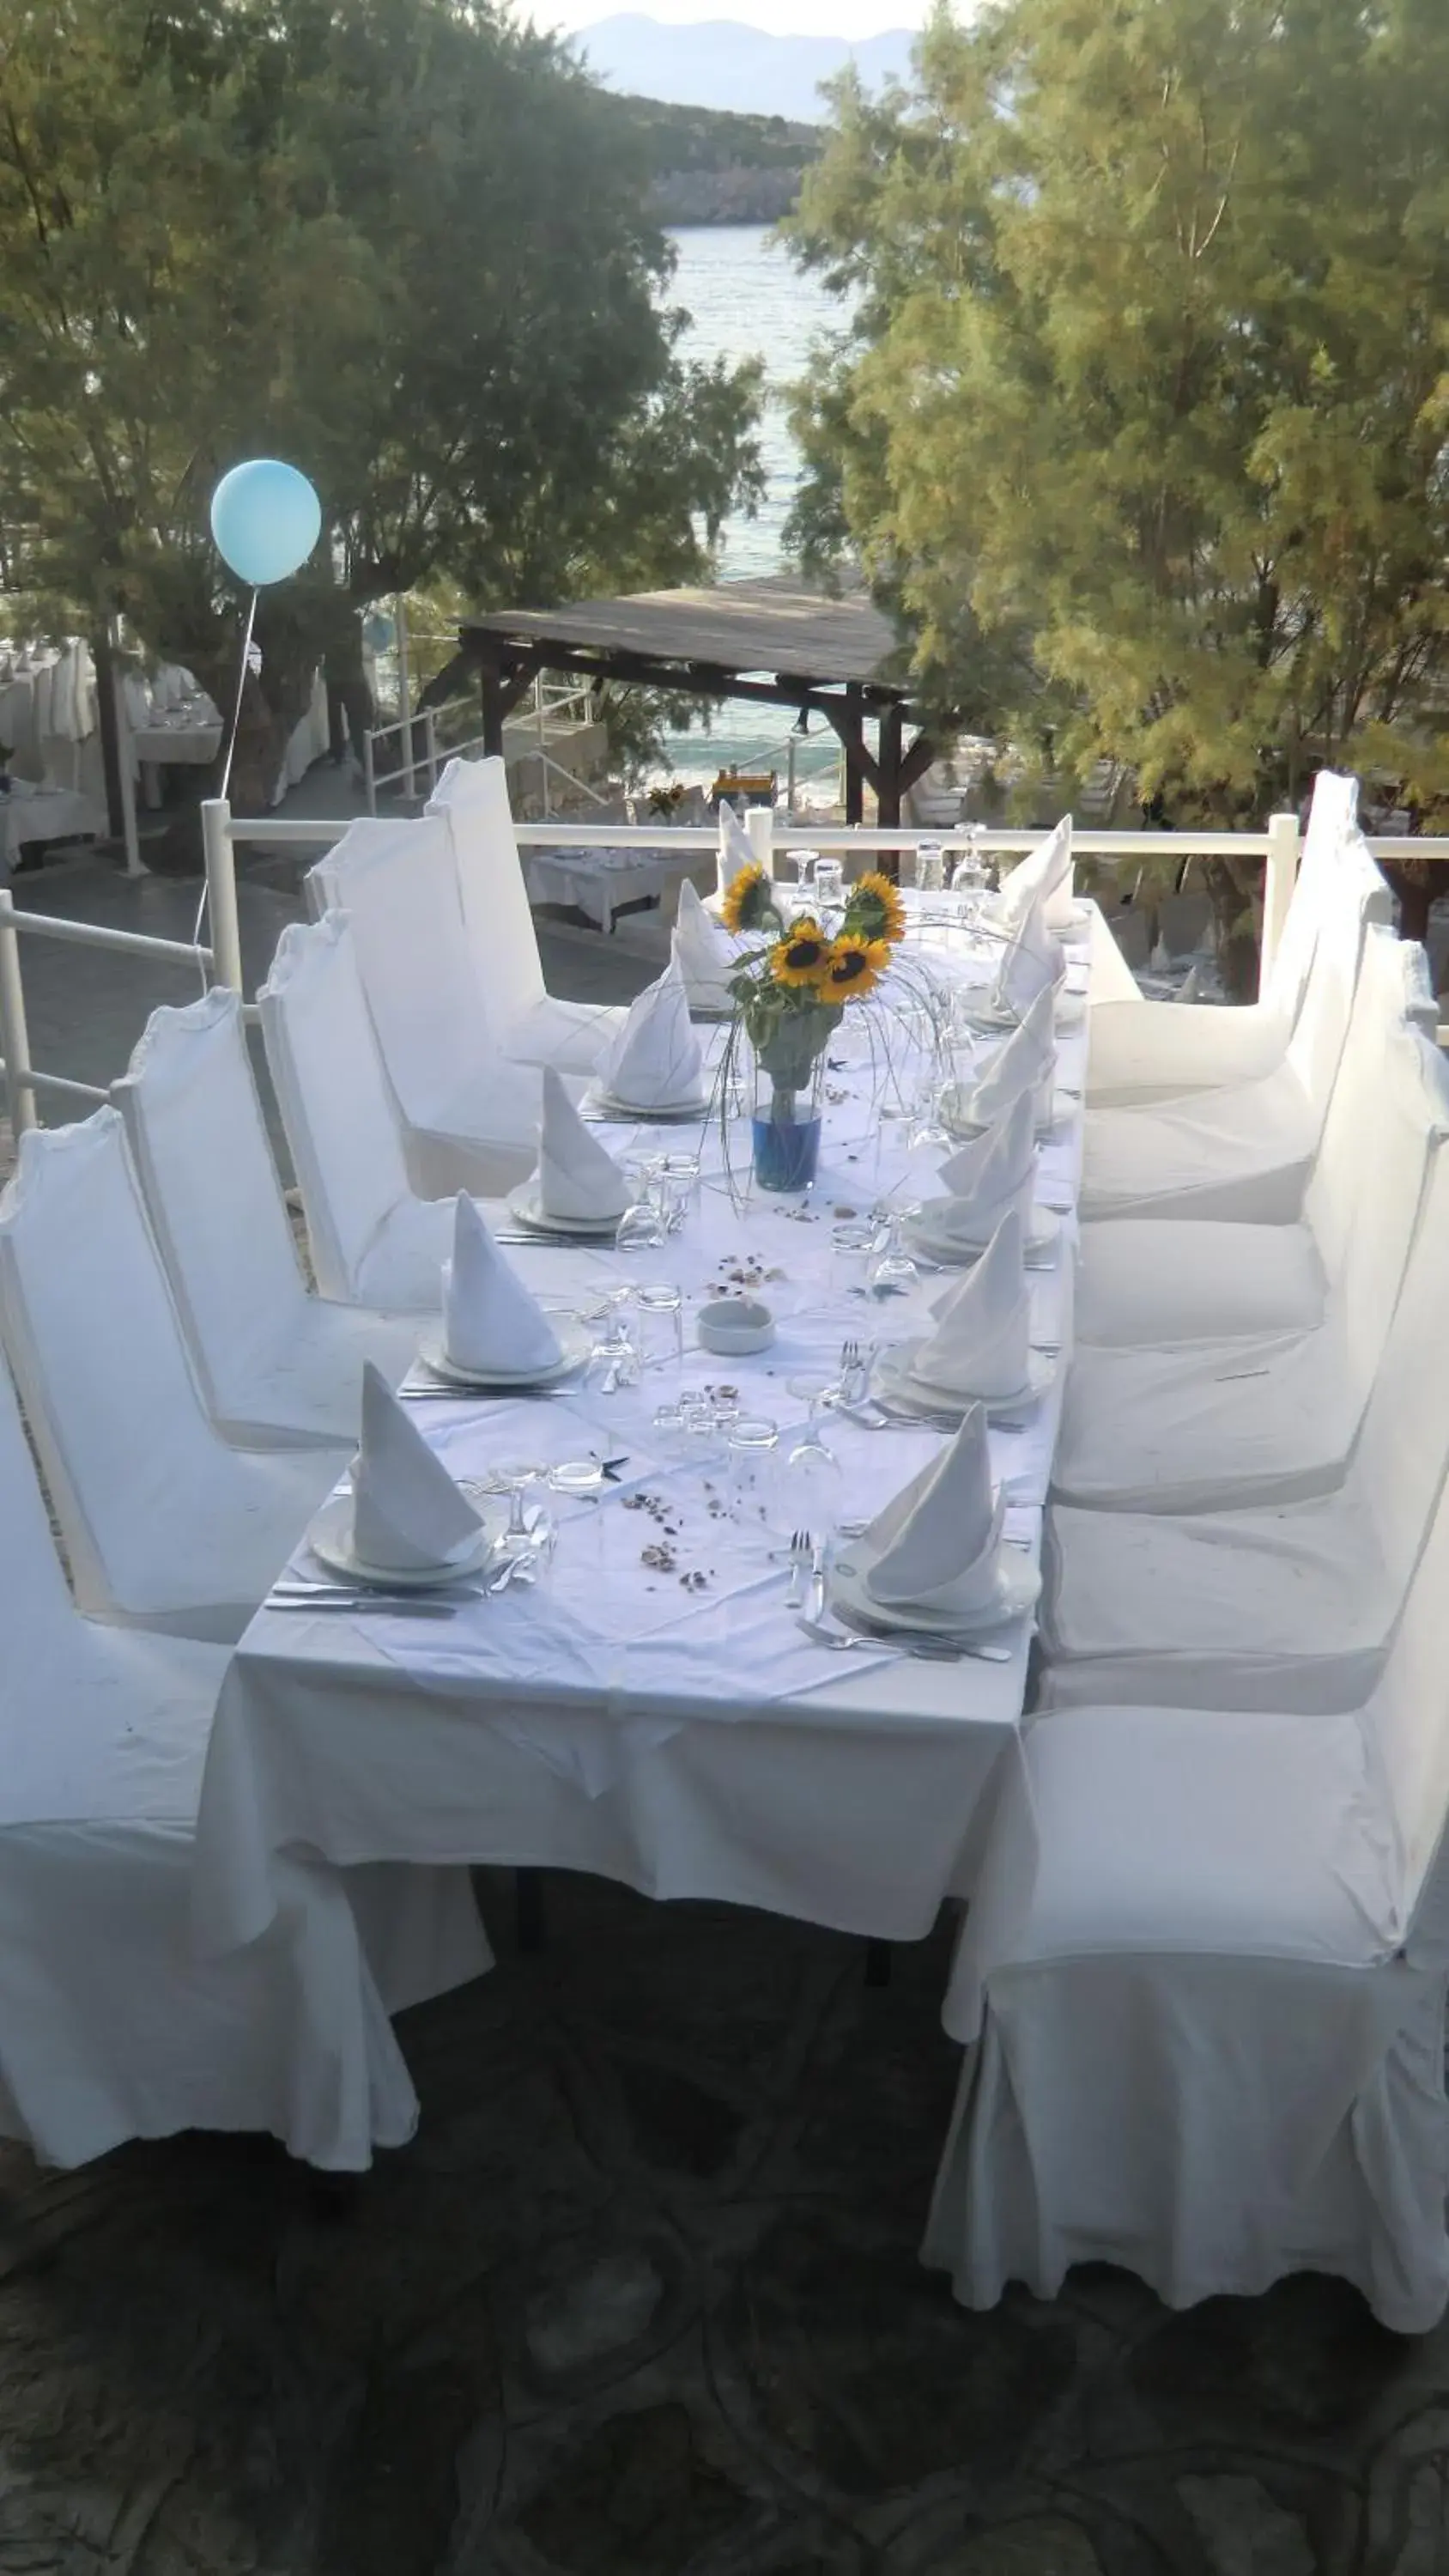 Banquet/Function facilities, Banquet Facilities in Istron Bay Hotel